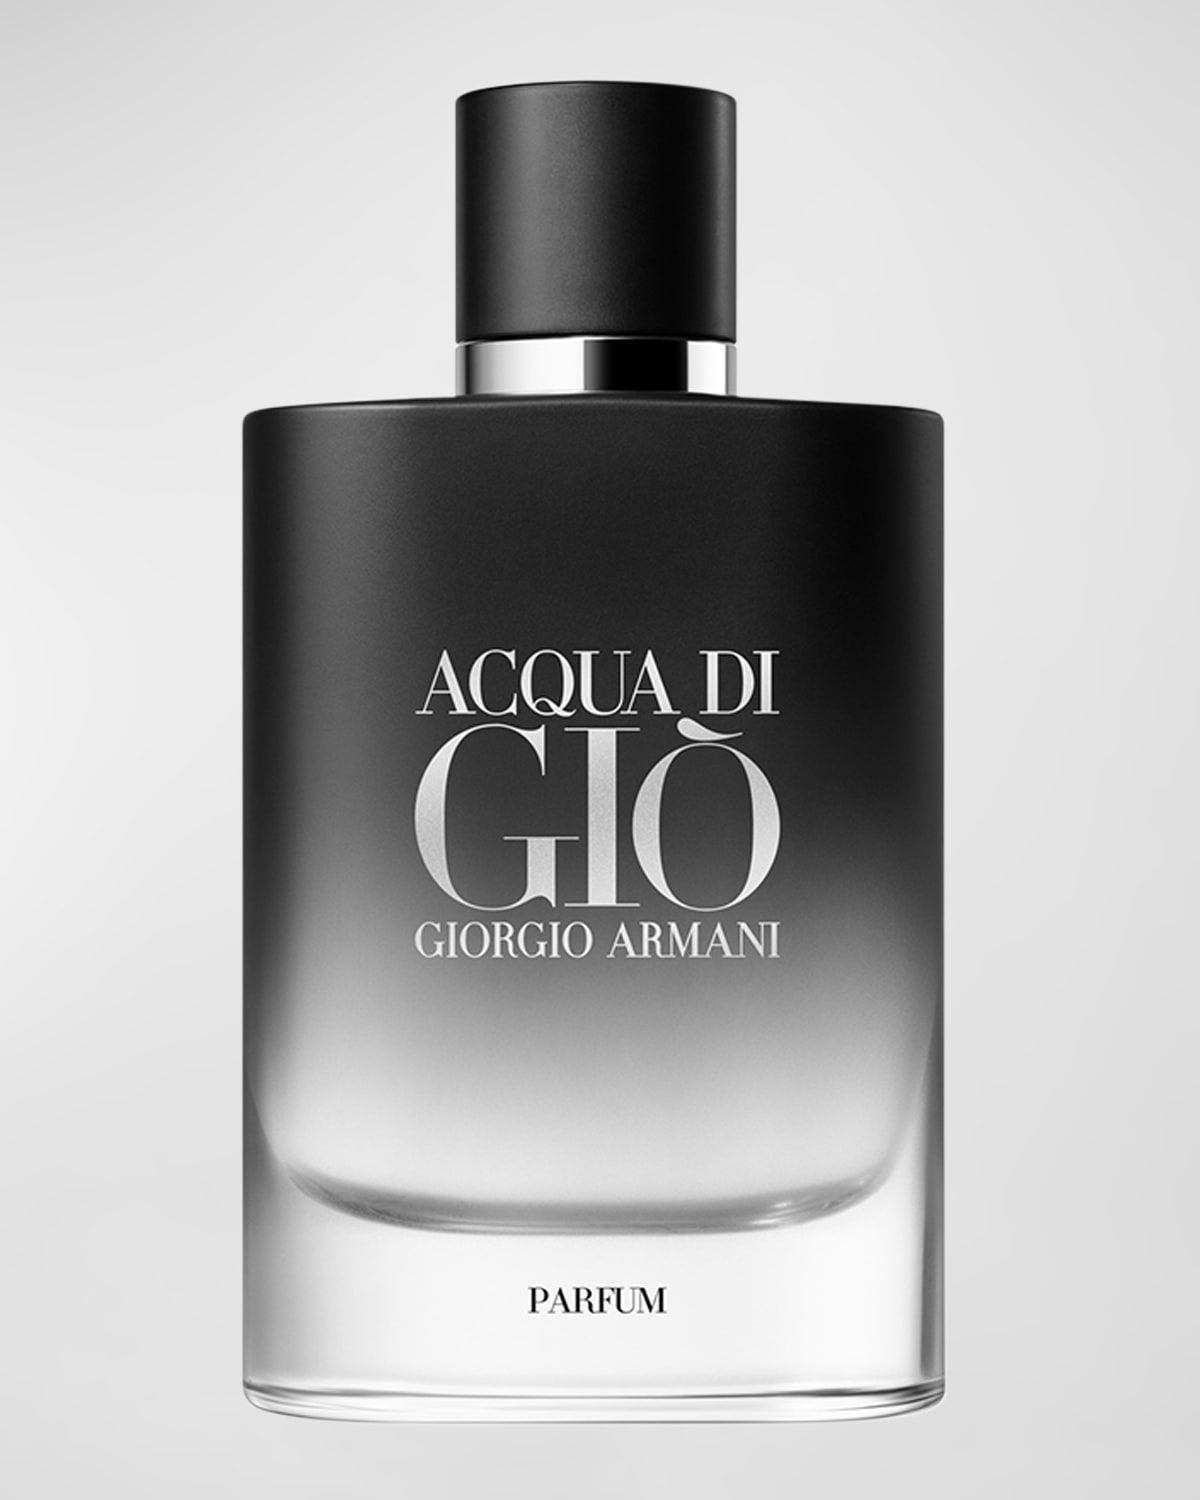 Acqua di Giò Parfum, 4.2 oz.